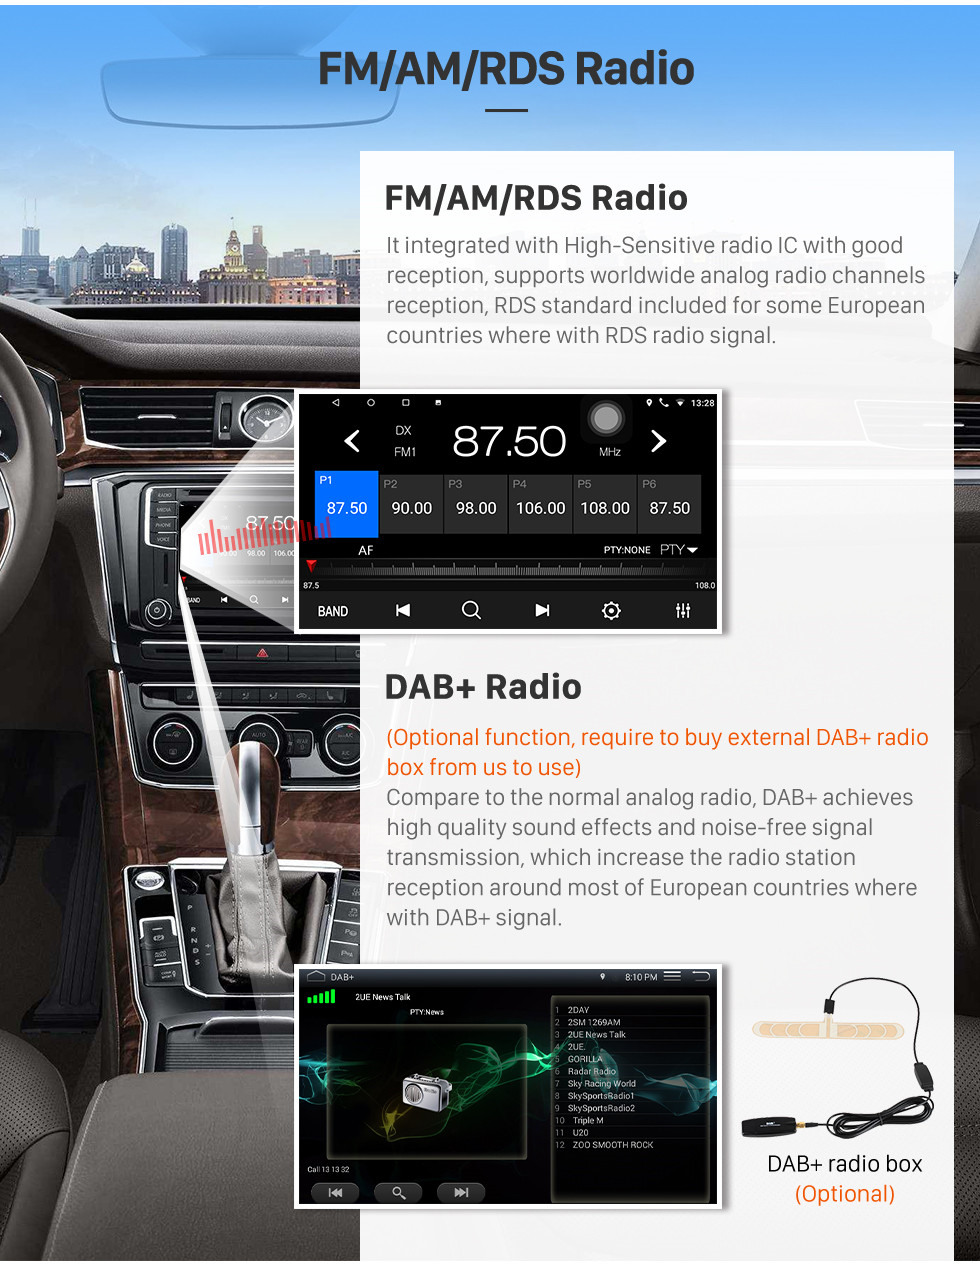 Seicane 9 pulgadas 1024 * 600 Pantalla táctil 2015 2016 VW Volkswagen Lamando Android 10.0 Radio con Bluetooth 3G WiFi OBD2 Mirror Link 1080P Control del volante Cámara de vista trasera